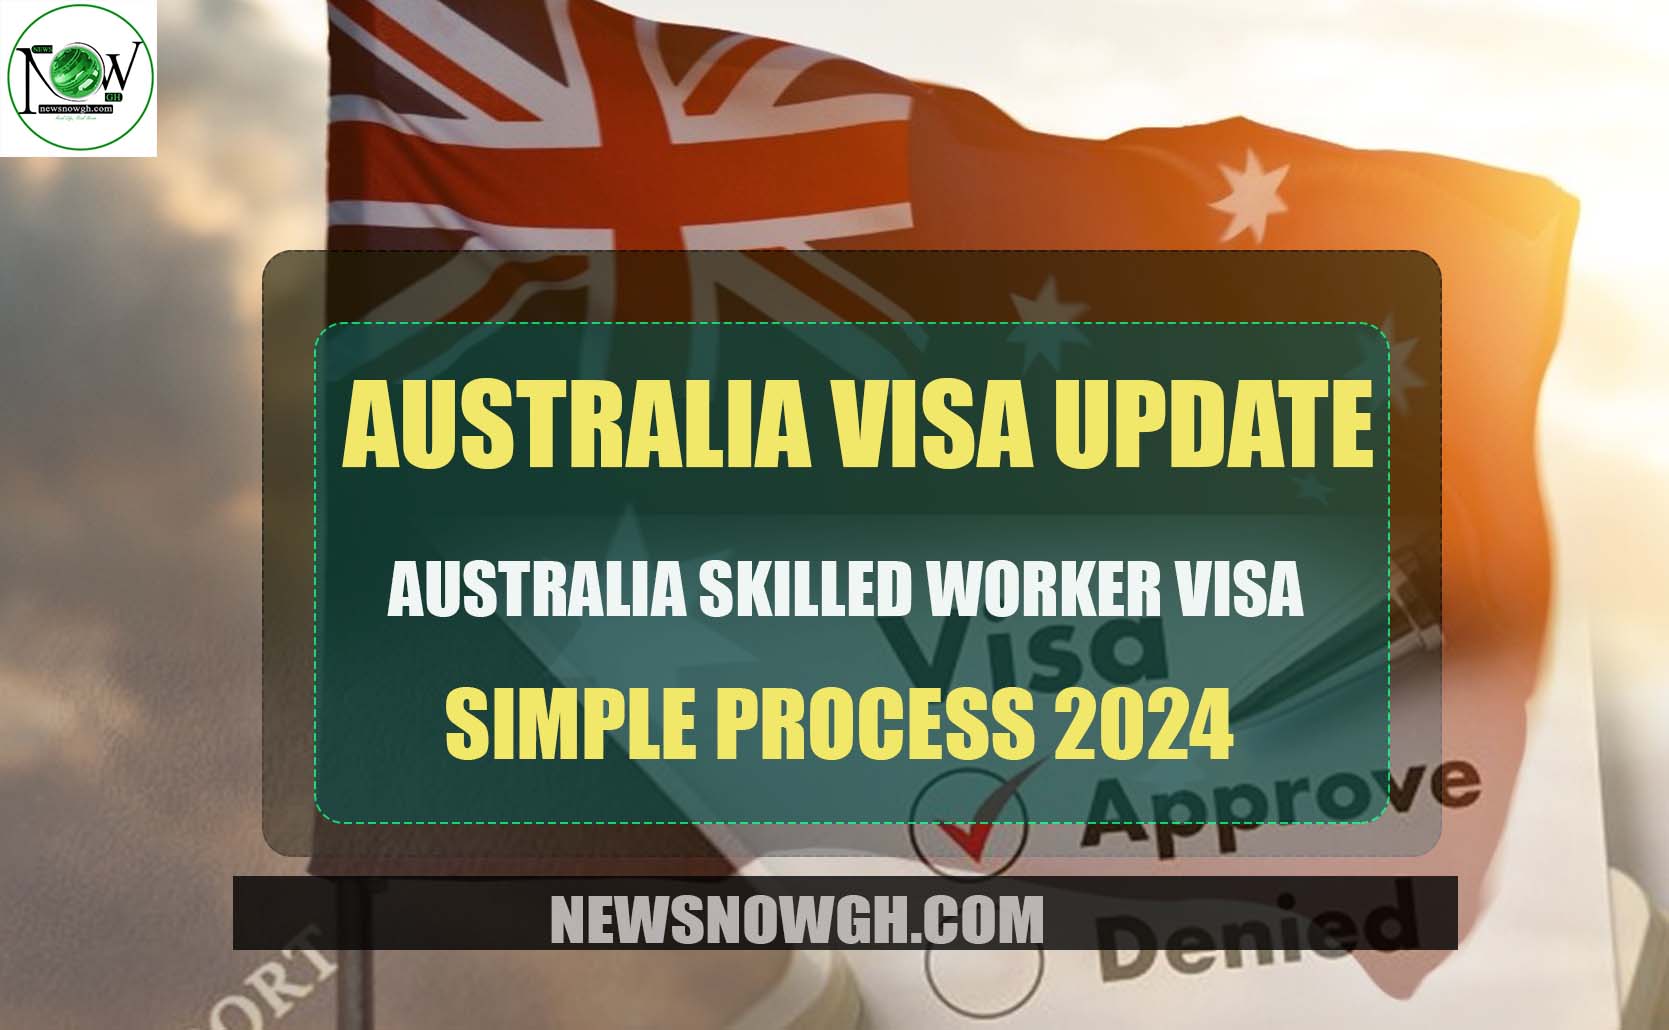 Australia Skilled Worker Visa Simple Process 2024 Australia Visa